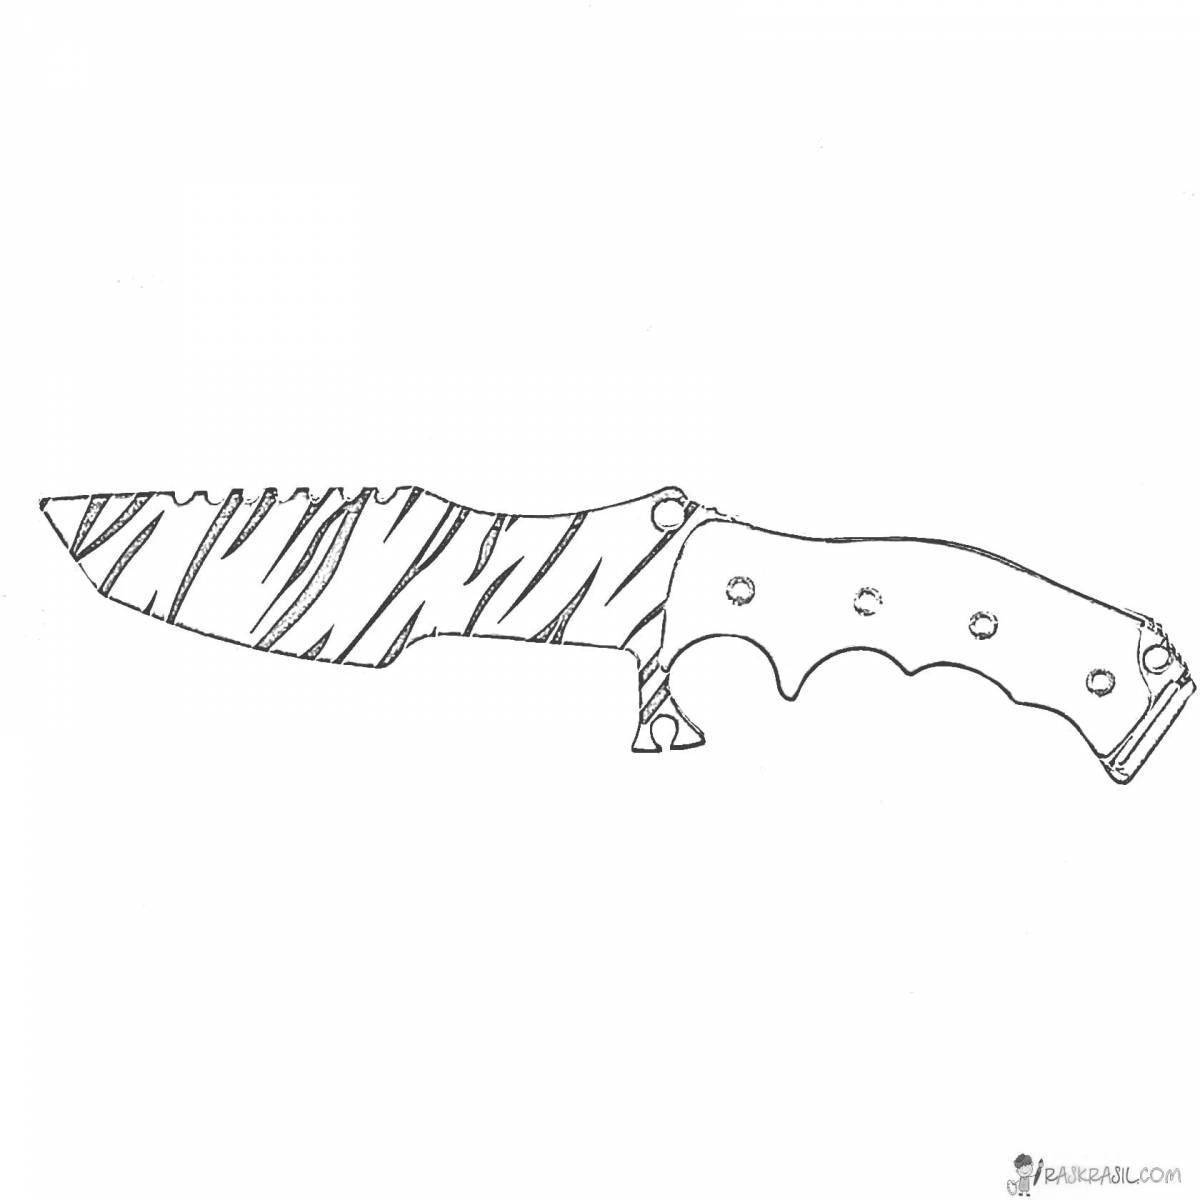 Ножи из КС го чертежи флип кнайф